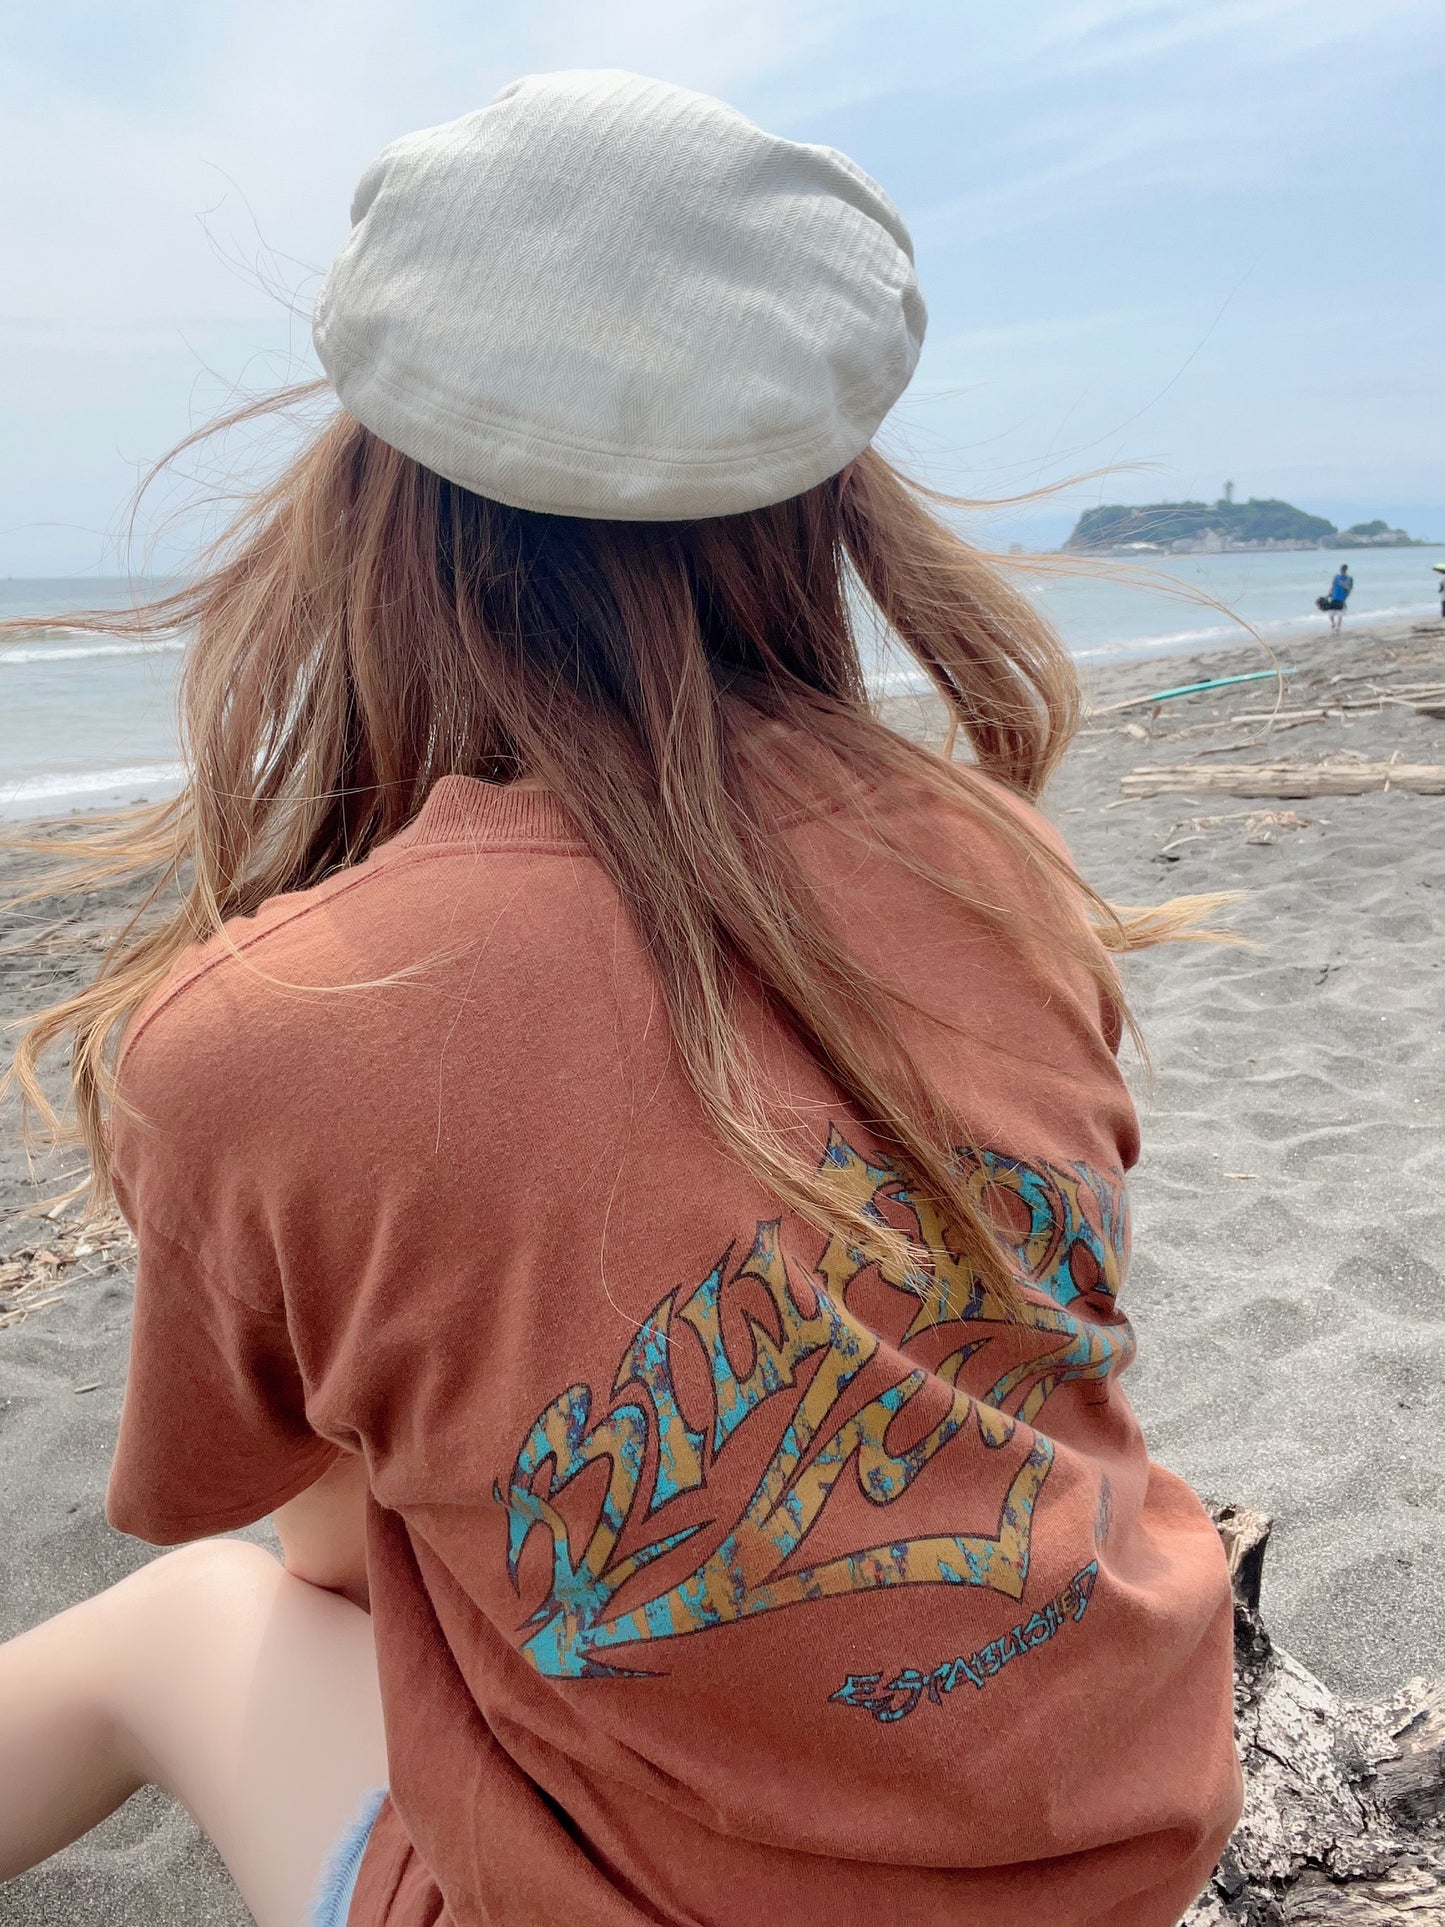 リンガー　Tシャツ　Ocean pacific billabong 90 水色